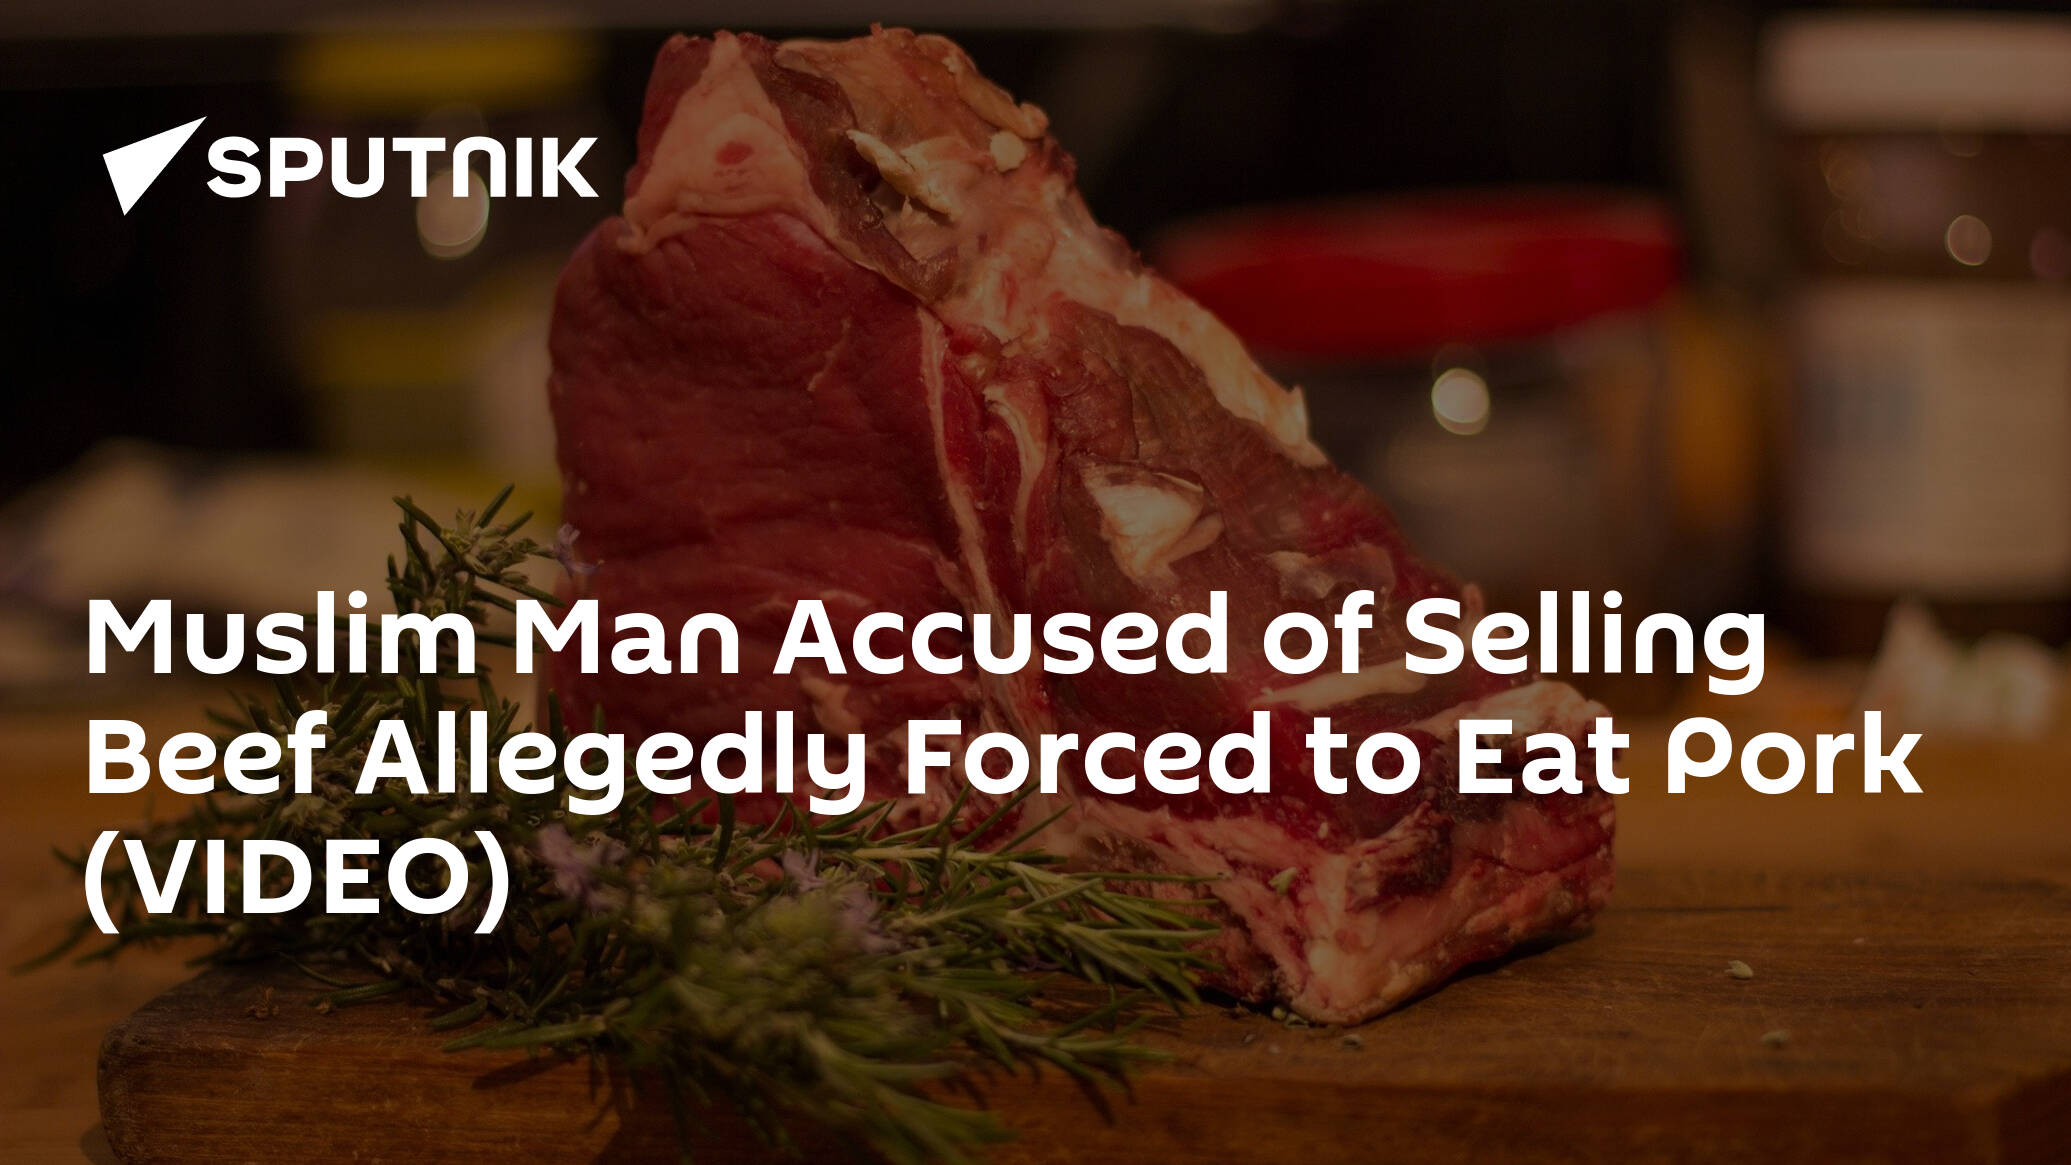 Muslim Man Accused Of Selling Beef Allegedly Forced To Eat Pork Video 09042019 Sputnik 